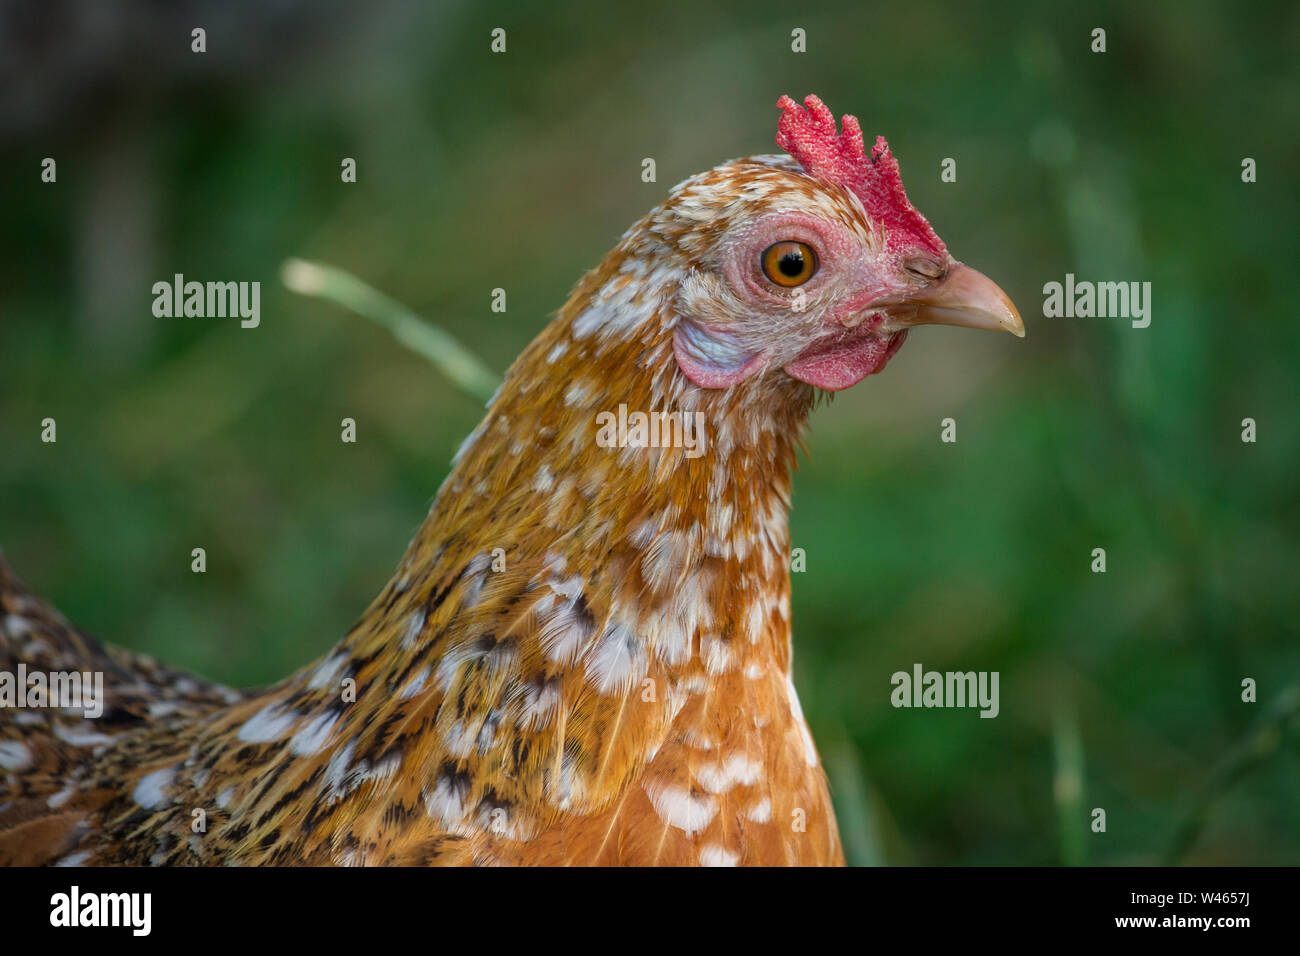 Free Range Huhn (Stoapiperl/Steinhendl, einer vom Aussterben bedrohten Rasse Huhn aus Österreich) Stockfoto